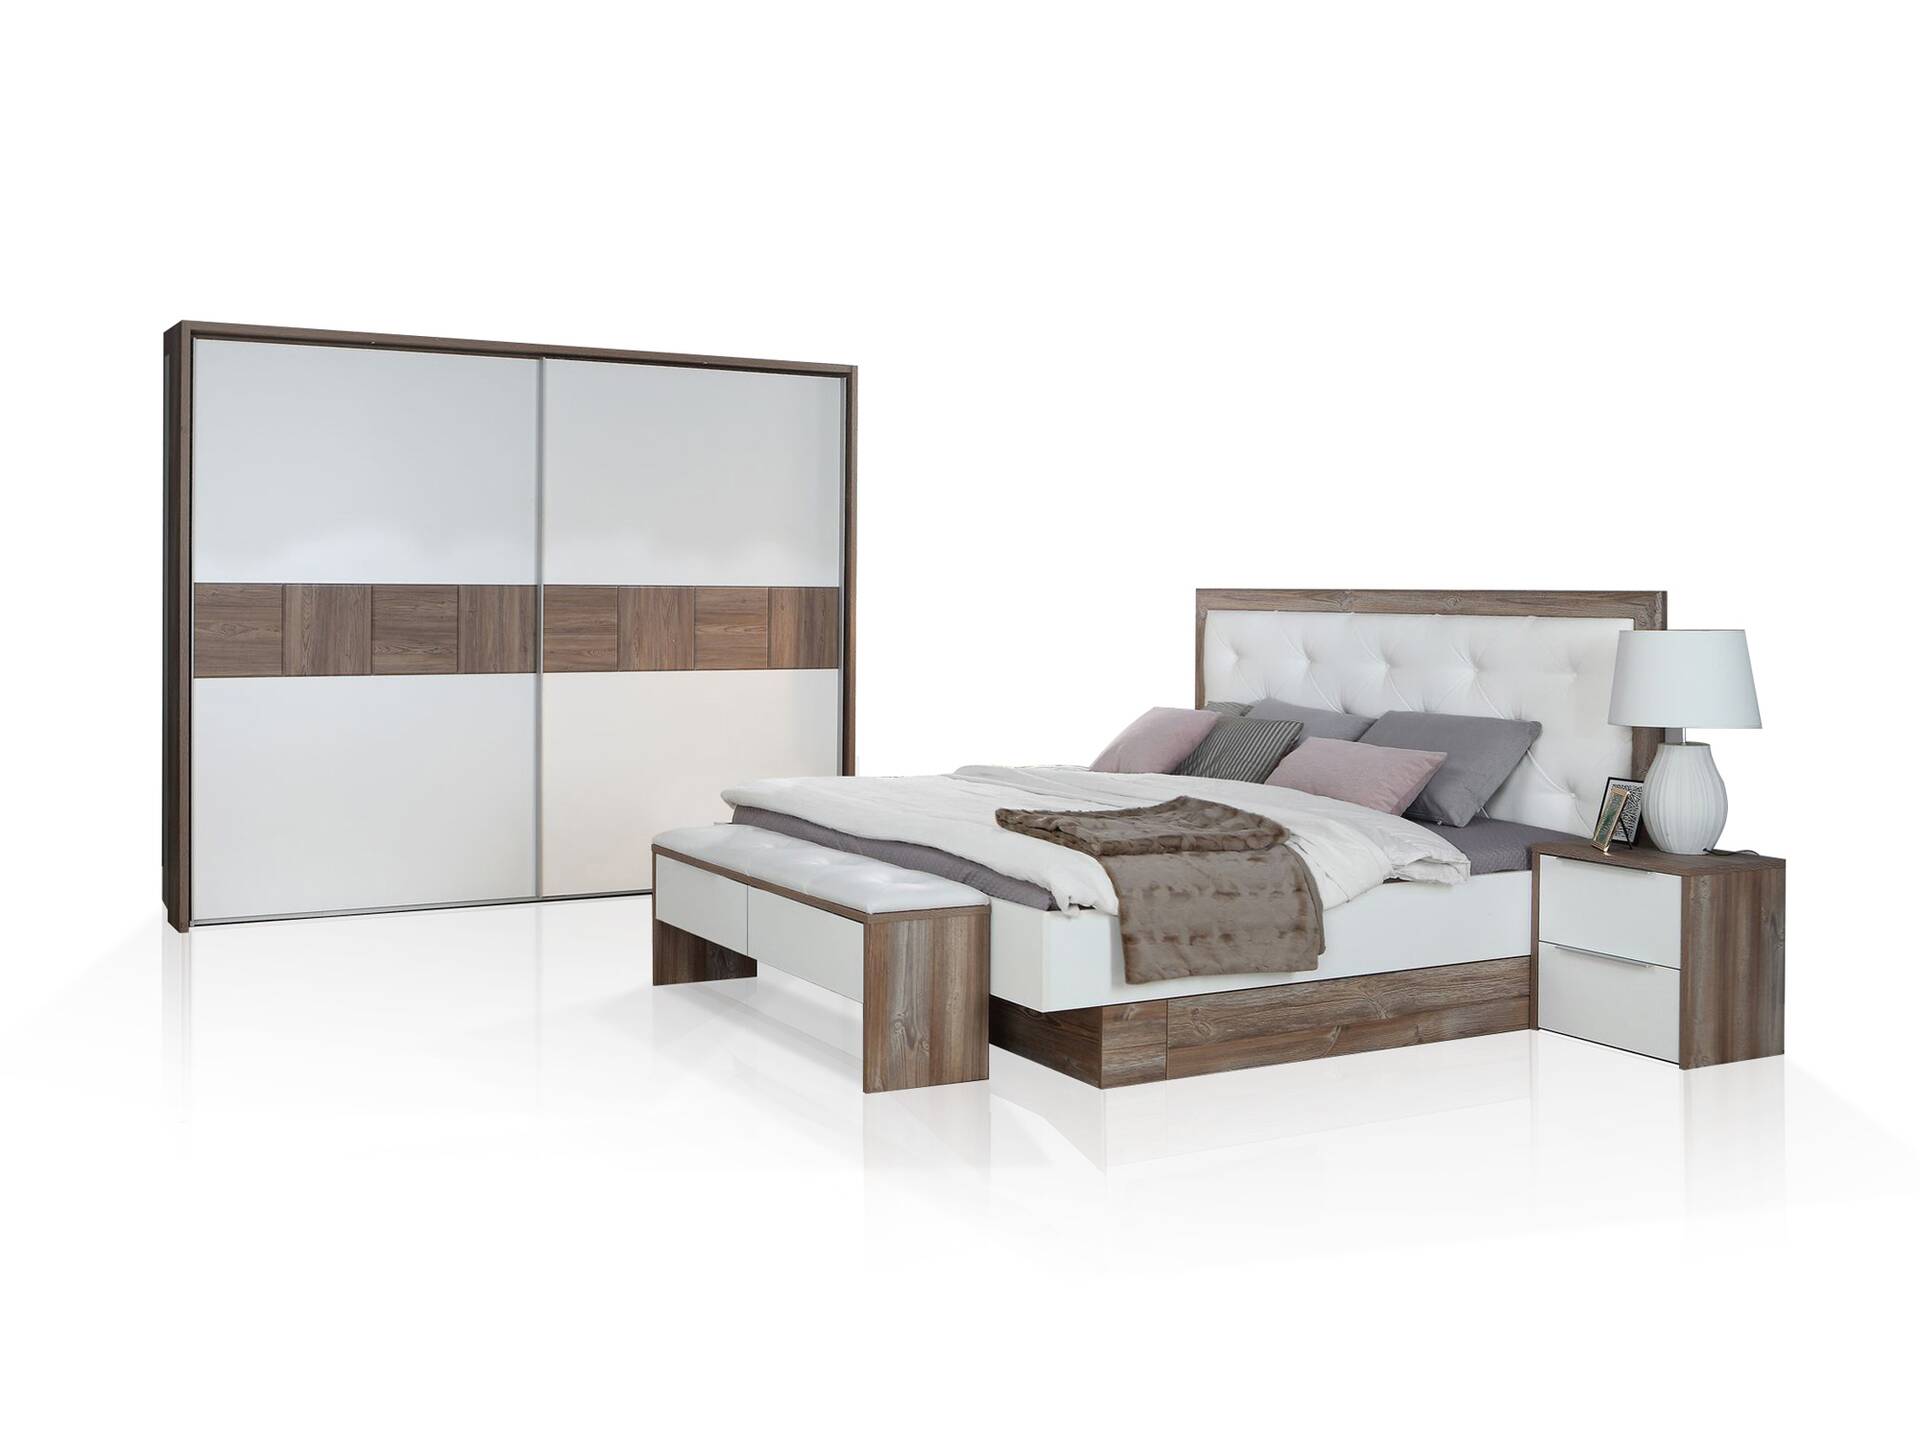 EVANDO Komplett-Schlafzimmer, Material Dekorspanplatte, Picea kieferfarbig/weiss 